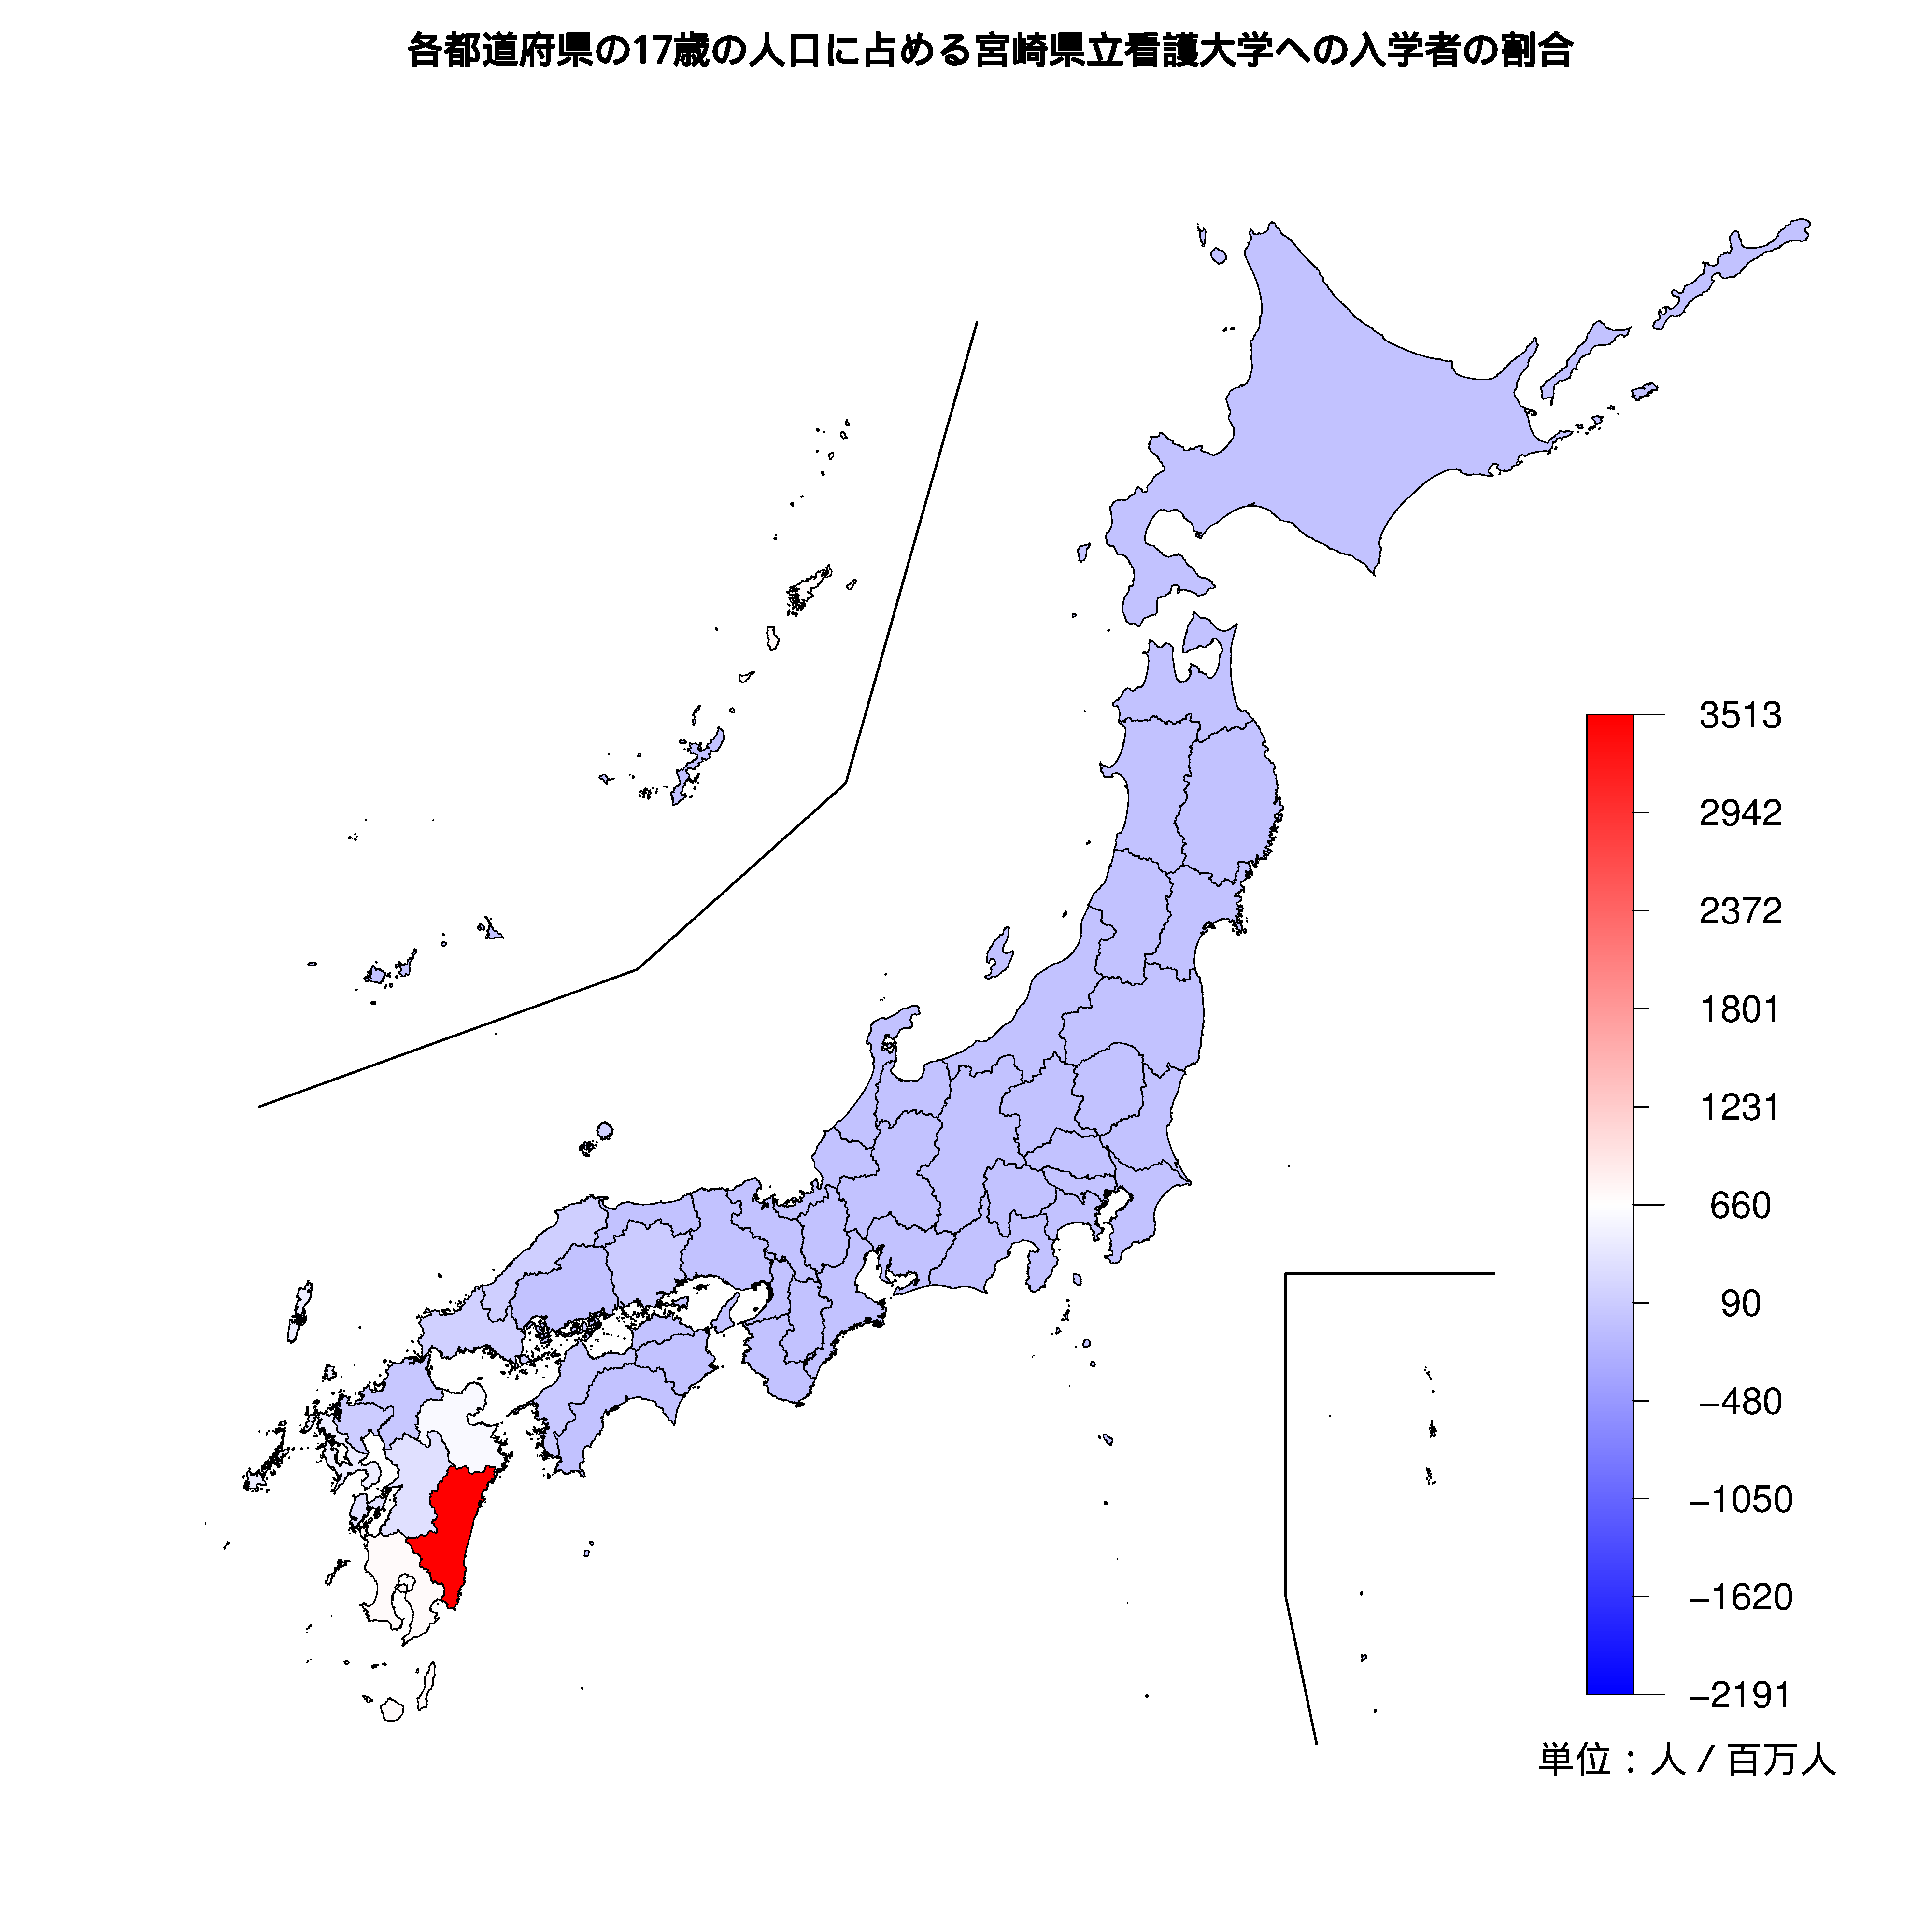 宮崎県立看護大学への入学者が多い都道府県の色分け地図